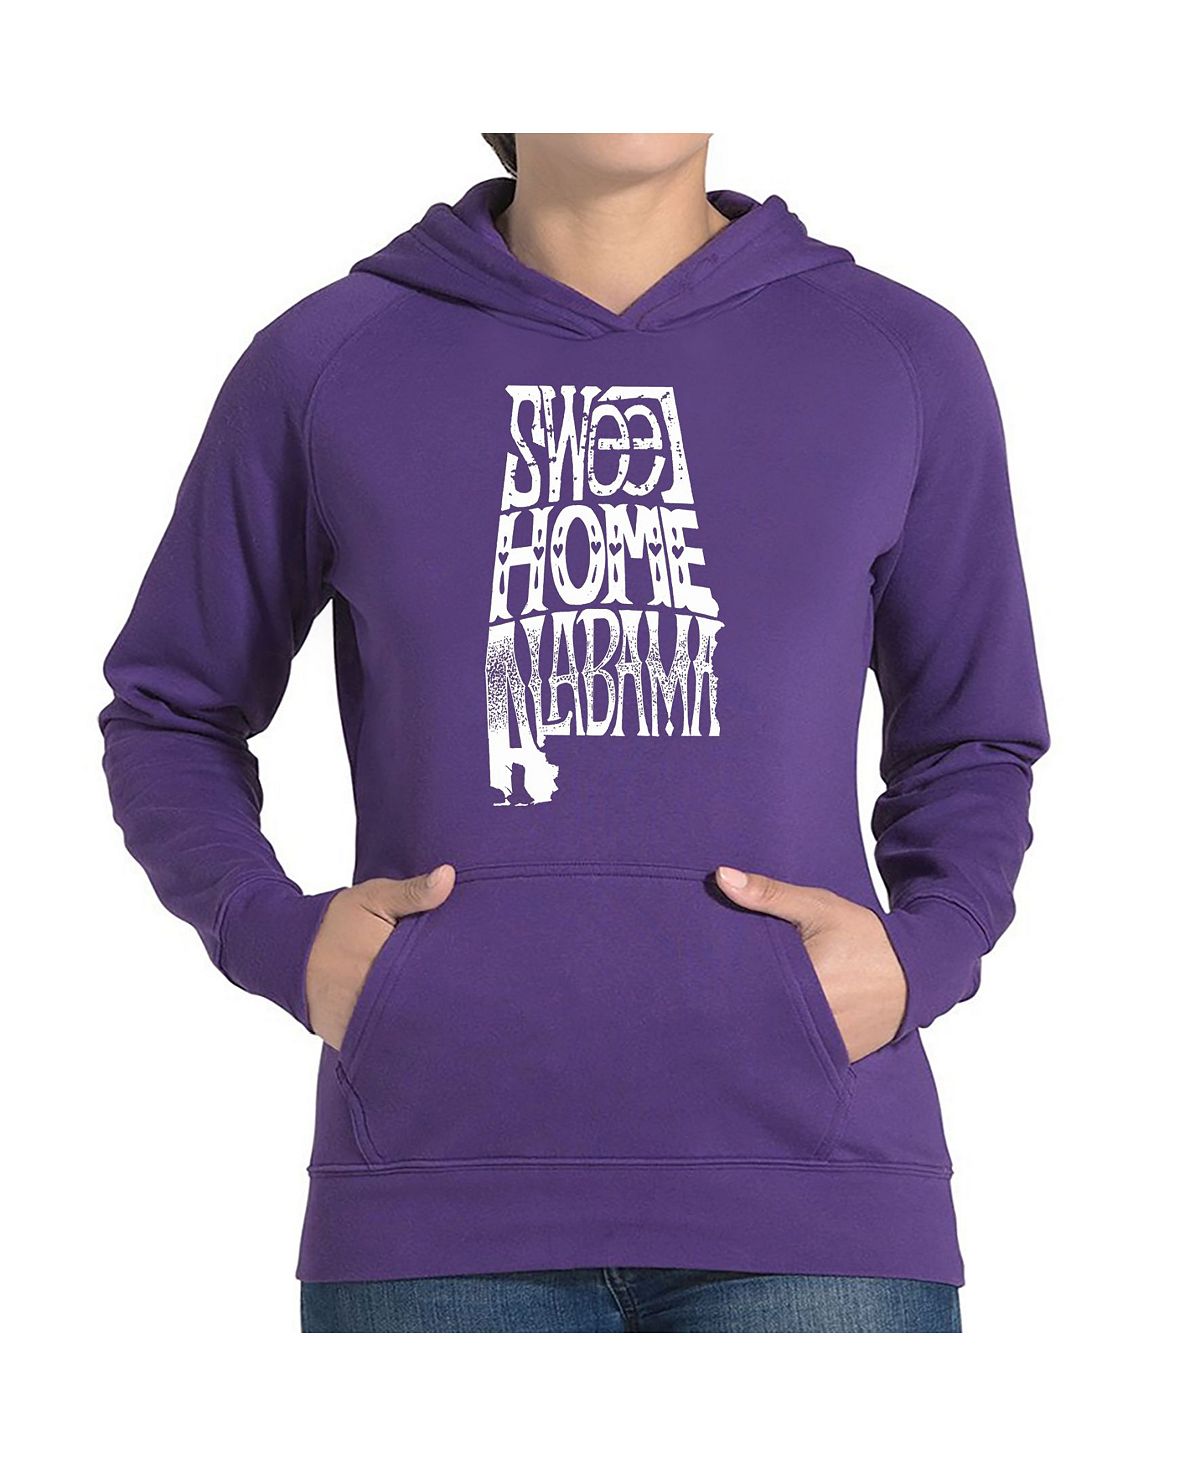 Женская толстовка с капюшоном и надписью word art - sweet home alabama LA Pop Art, фиолетовый